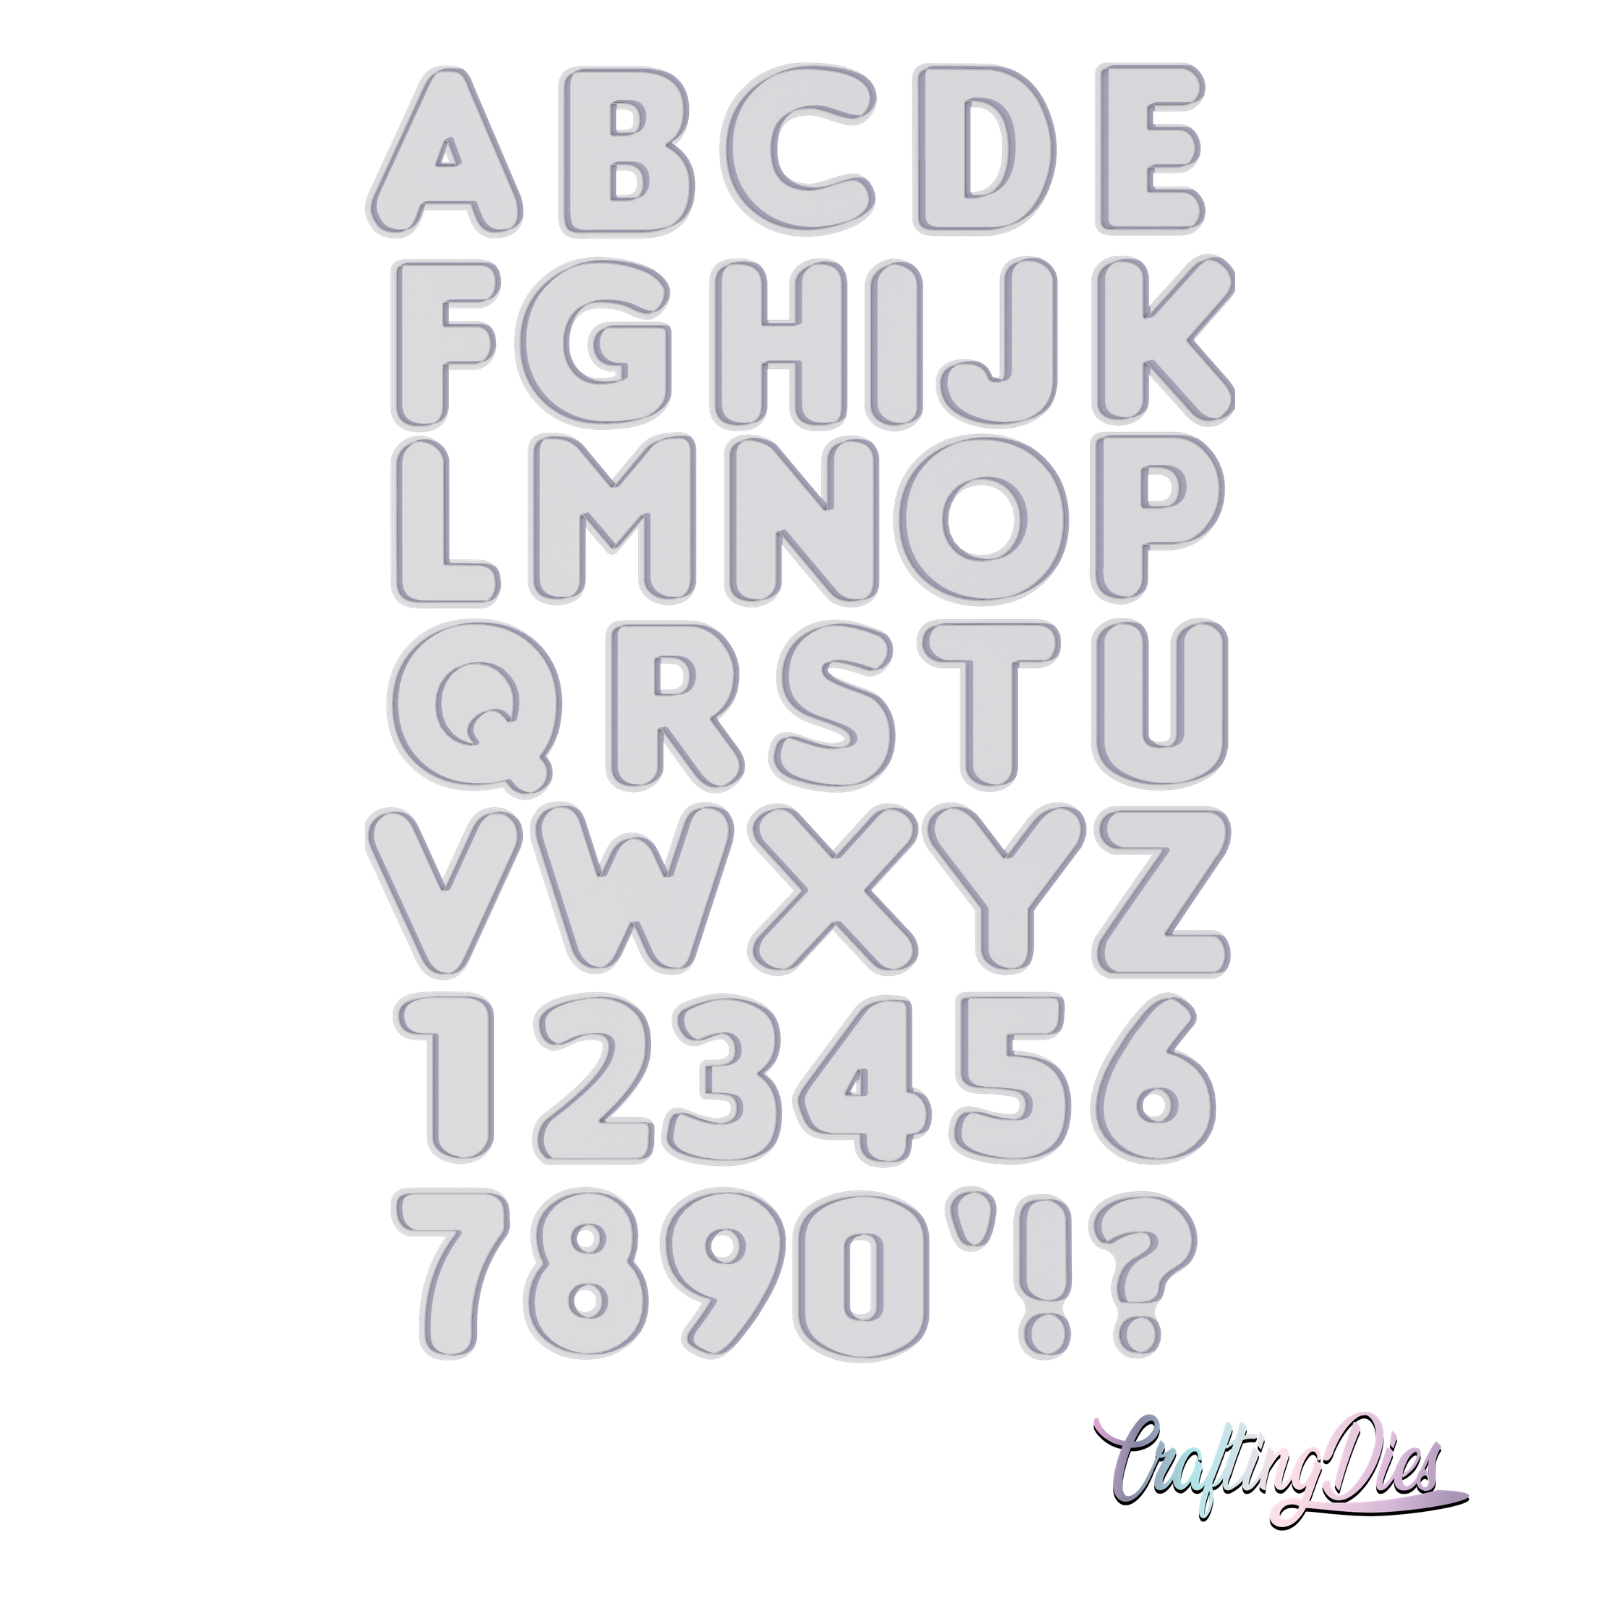 Fustella Alfabeto, Stile London, Dimensione Media 2Cm Con Lettere e Numeri